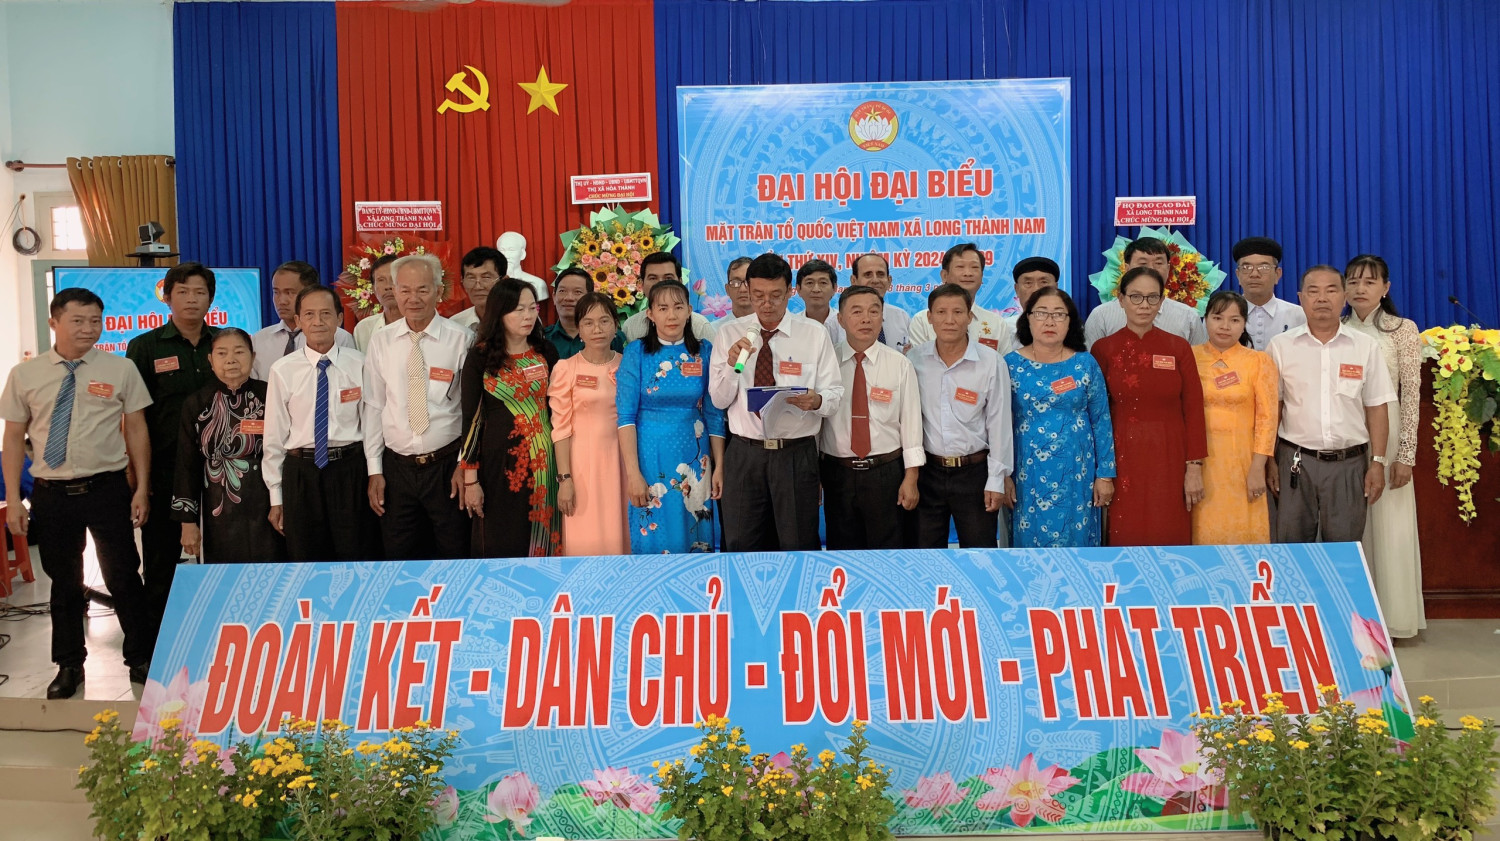 Quang cảnh Đại hội đại biểu MTTQ Việt Nam xã Long Thành Nam